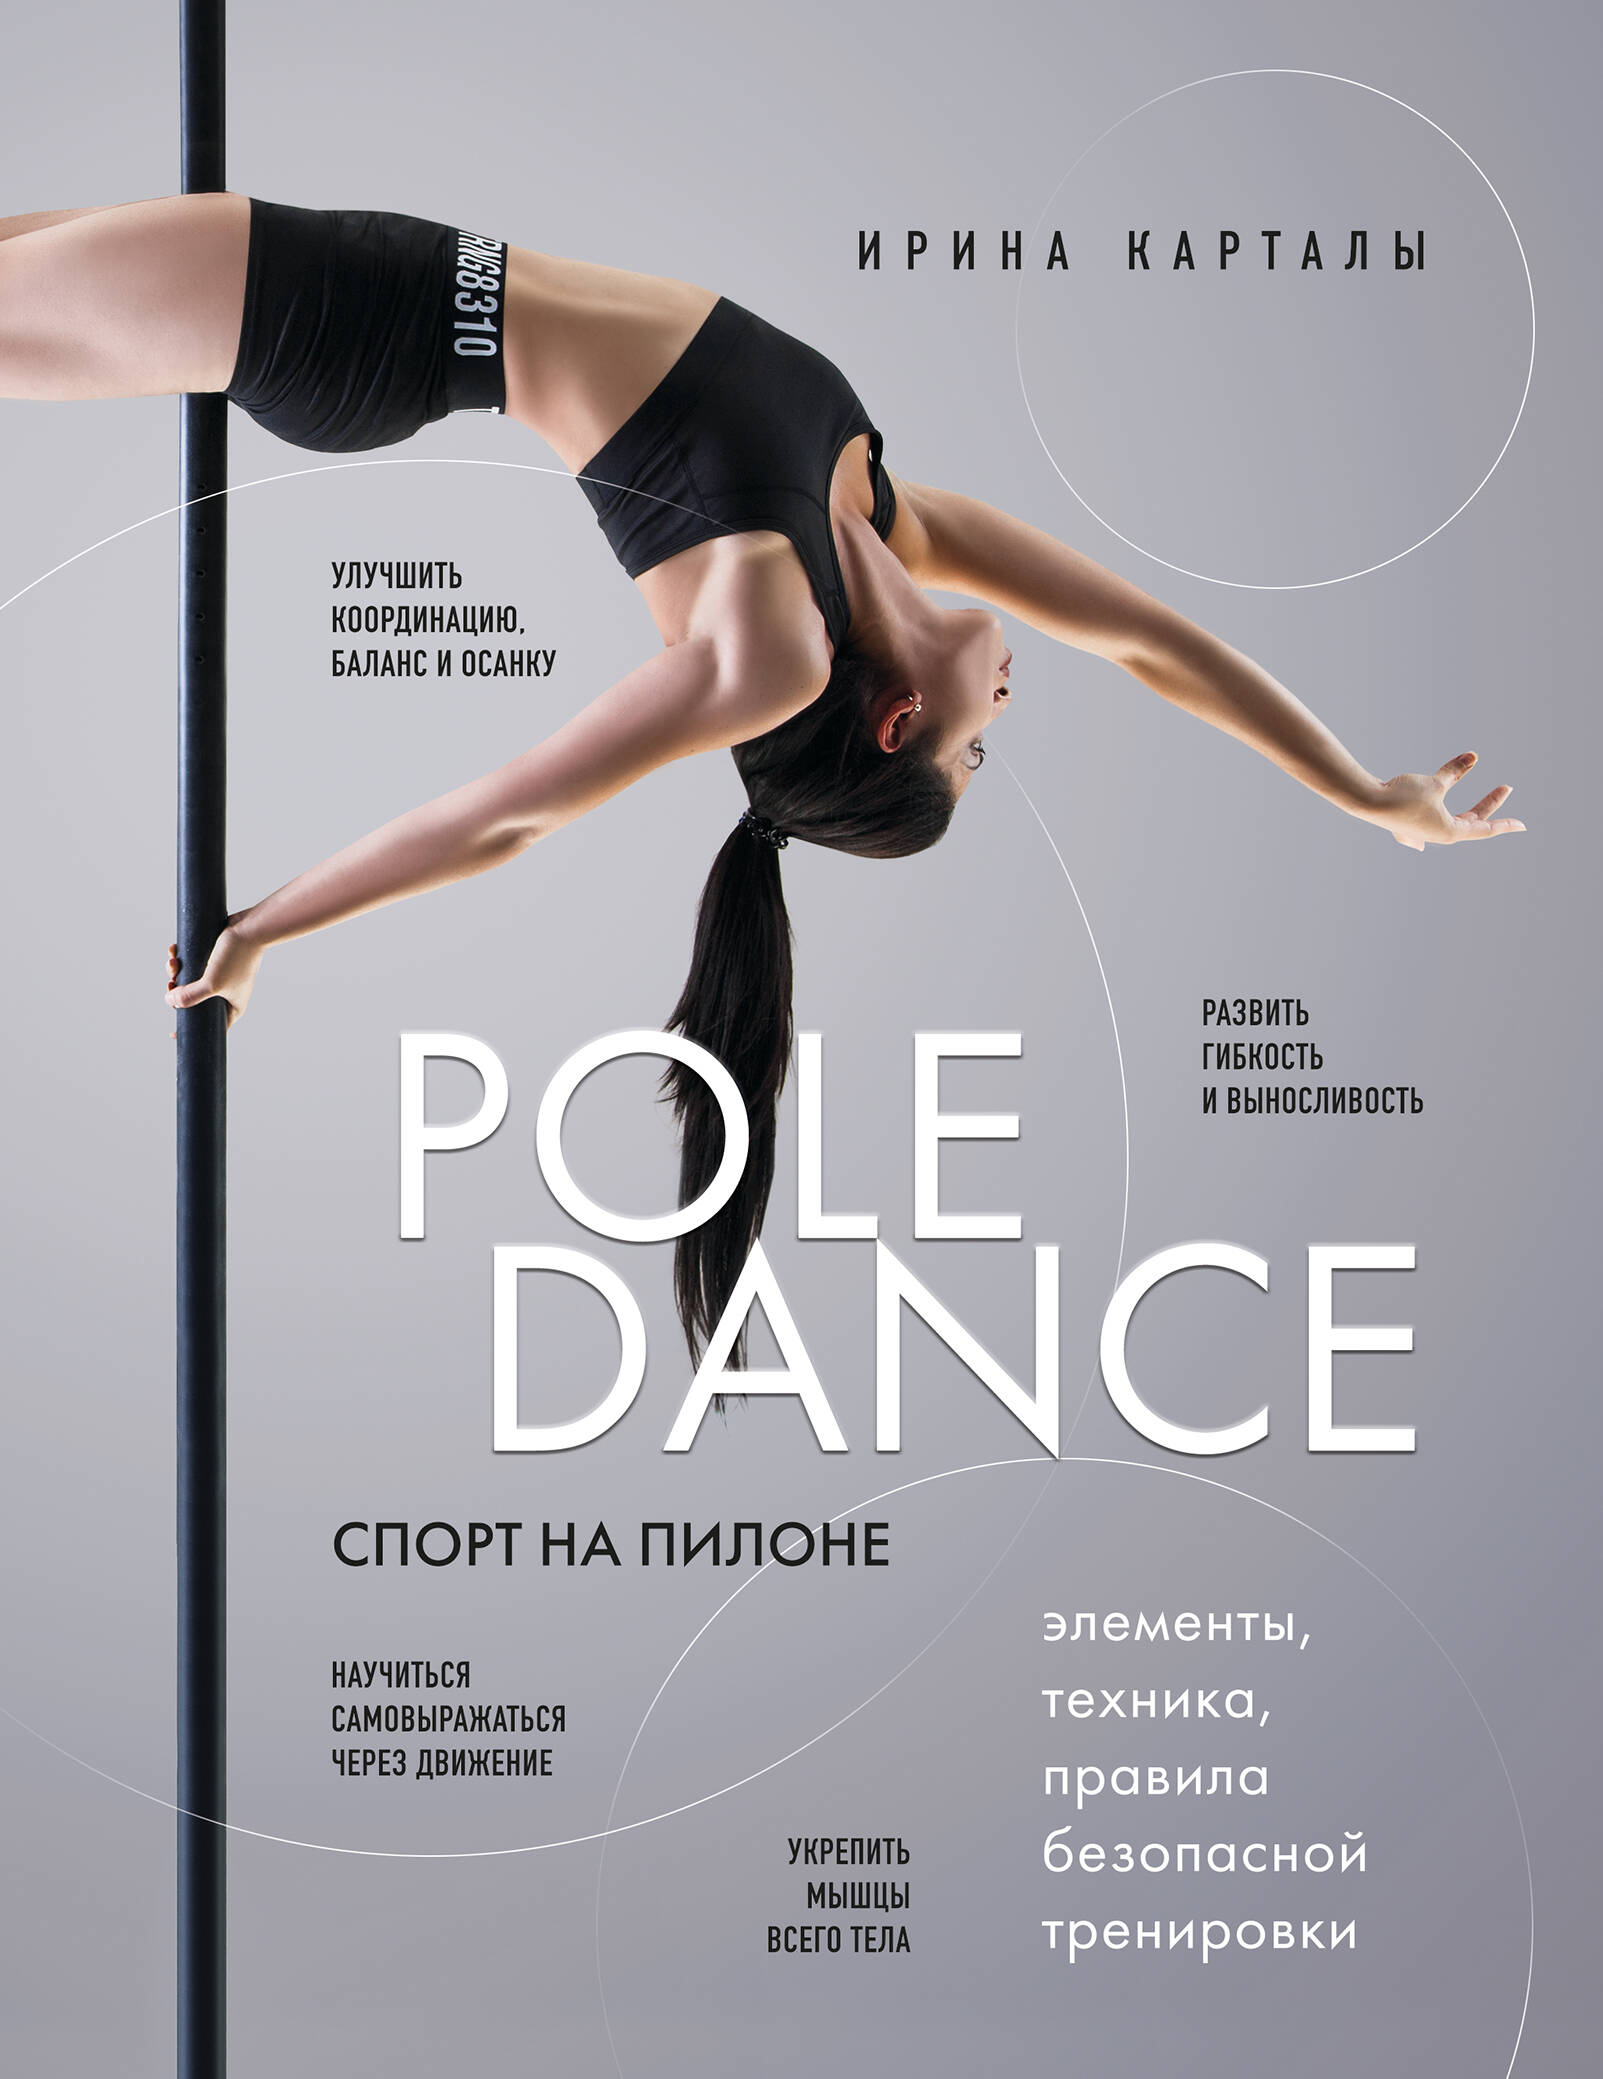  книга Спорт на пилоне. Pole dance. Элементы, техника, правила безопасной тренировки